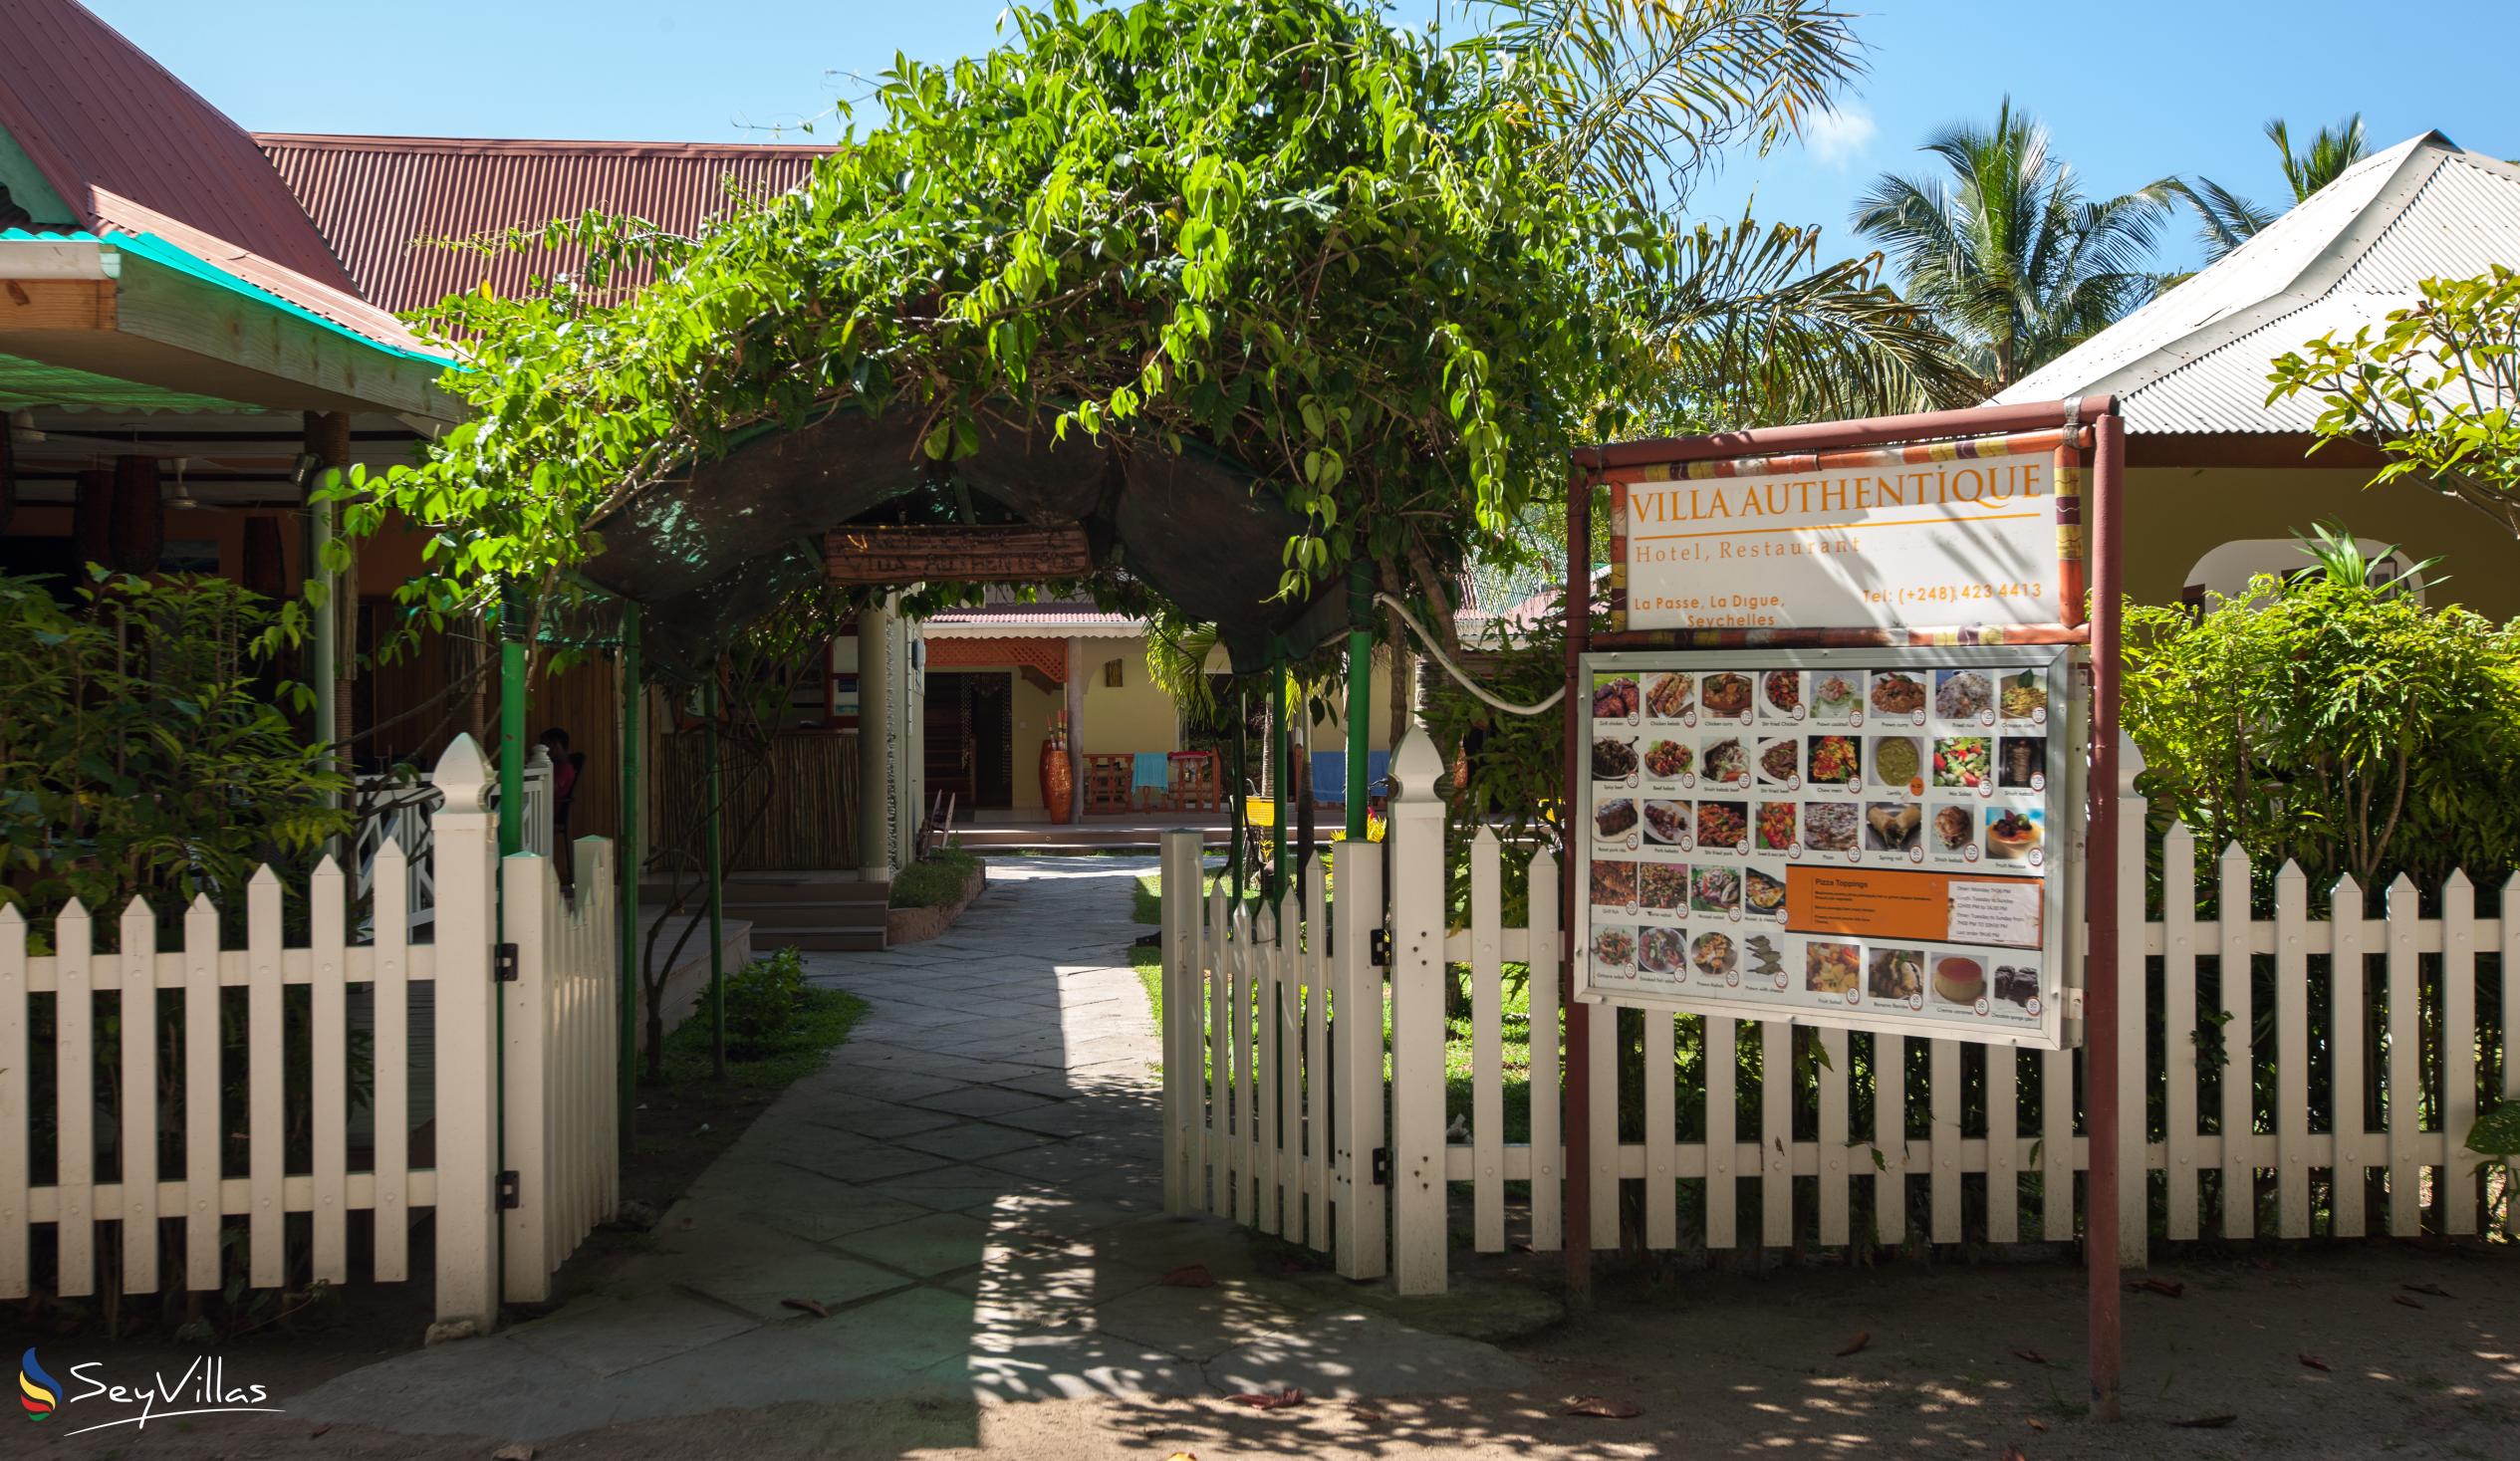 Foto 4: Villa Authentique - Aussenbereich - La Digue (Seychellen)